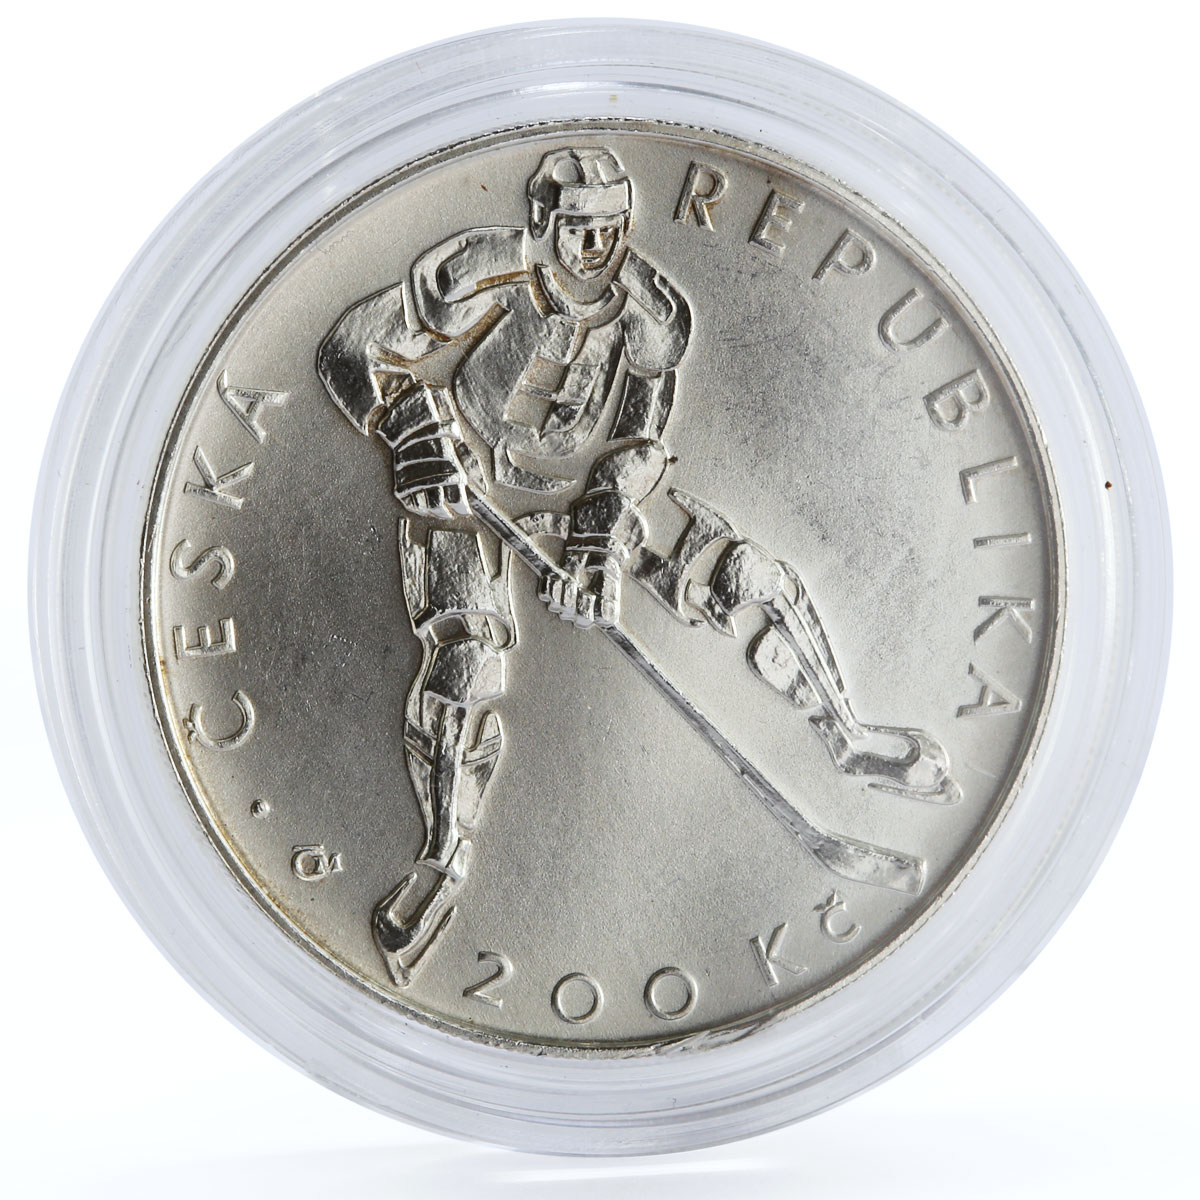 Czech Republic 200 korun Forming National Hockey Association silver coin 2008